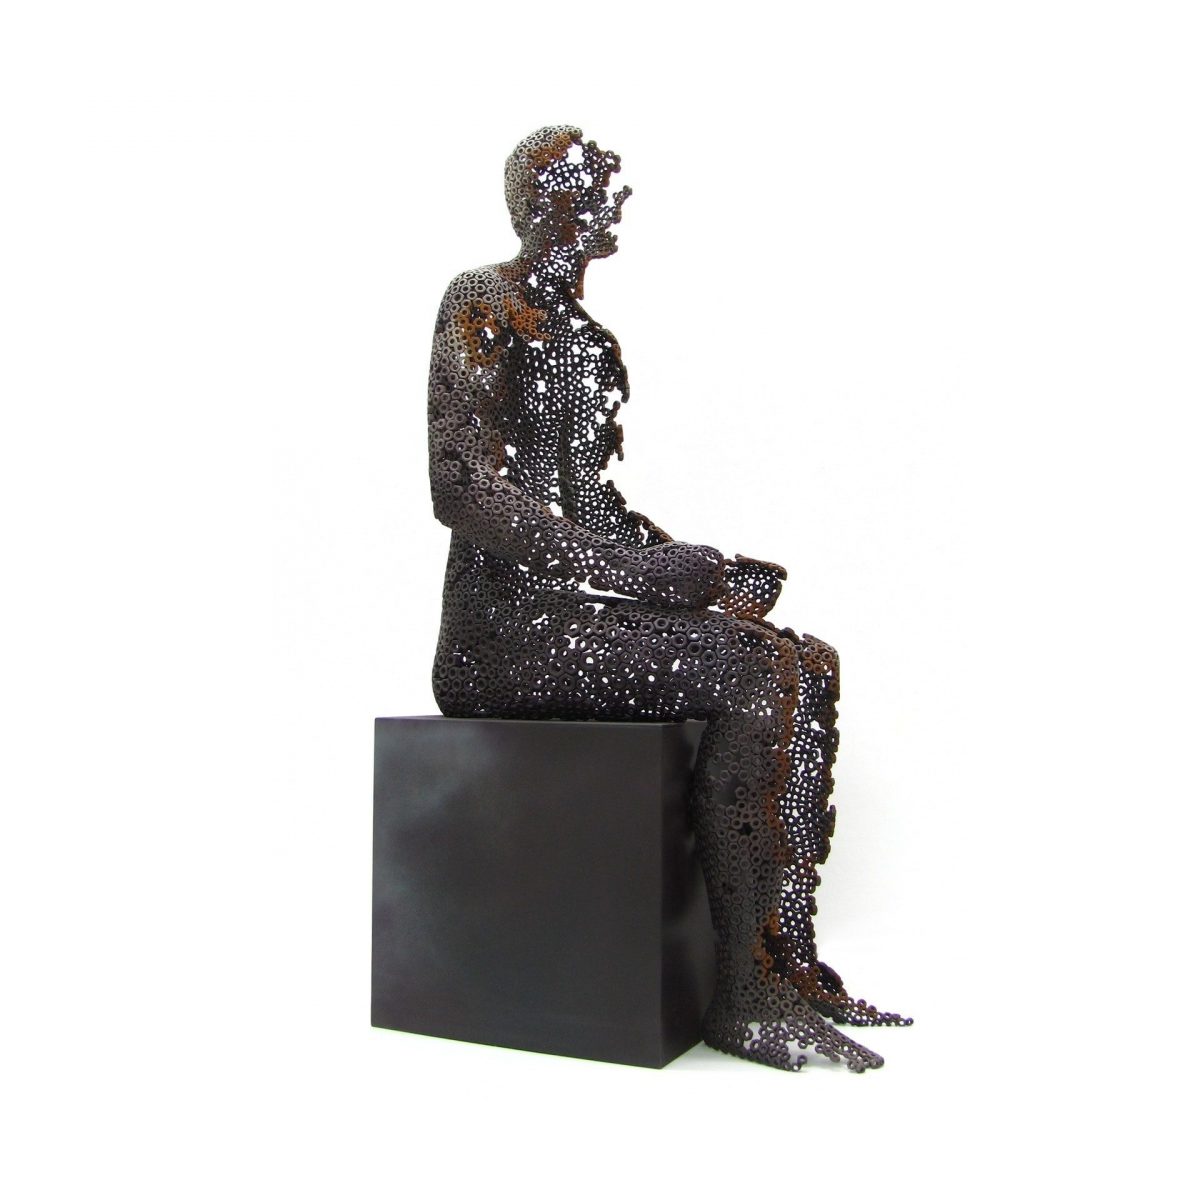 MORENO Absent Buy sculptures online